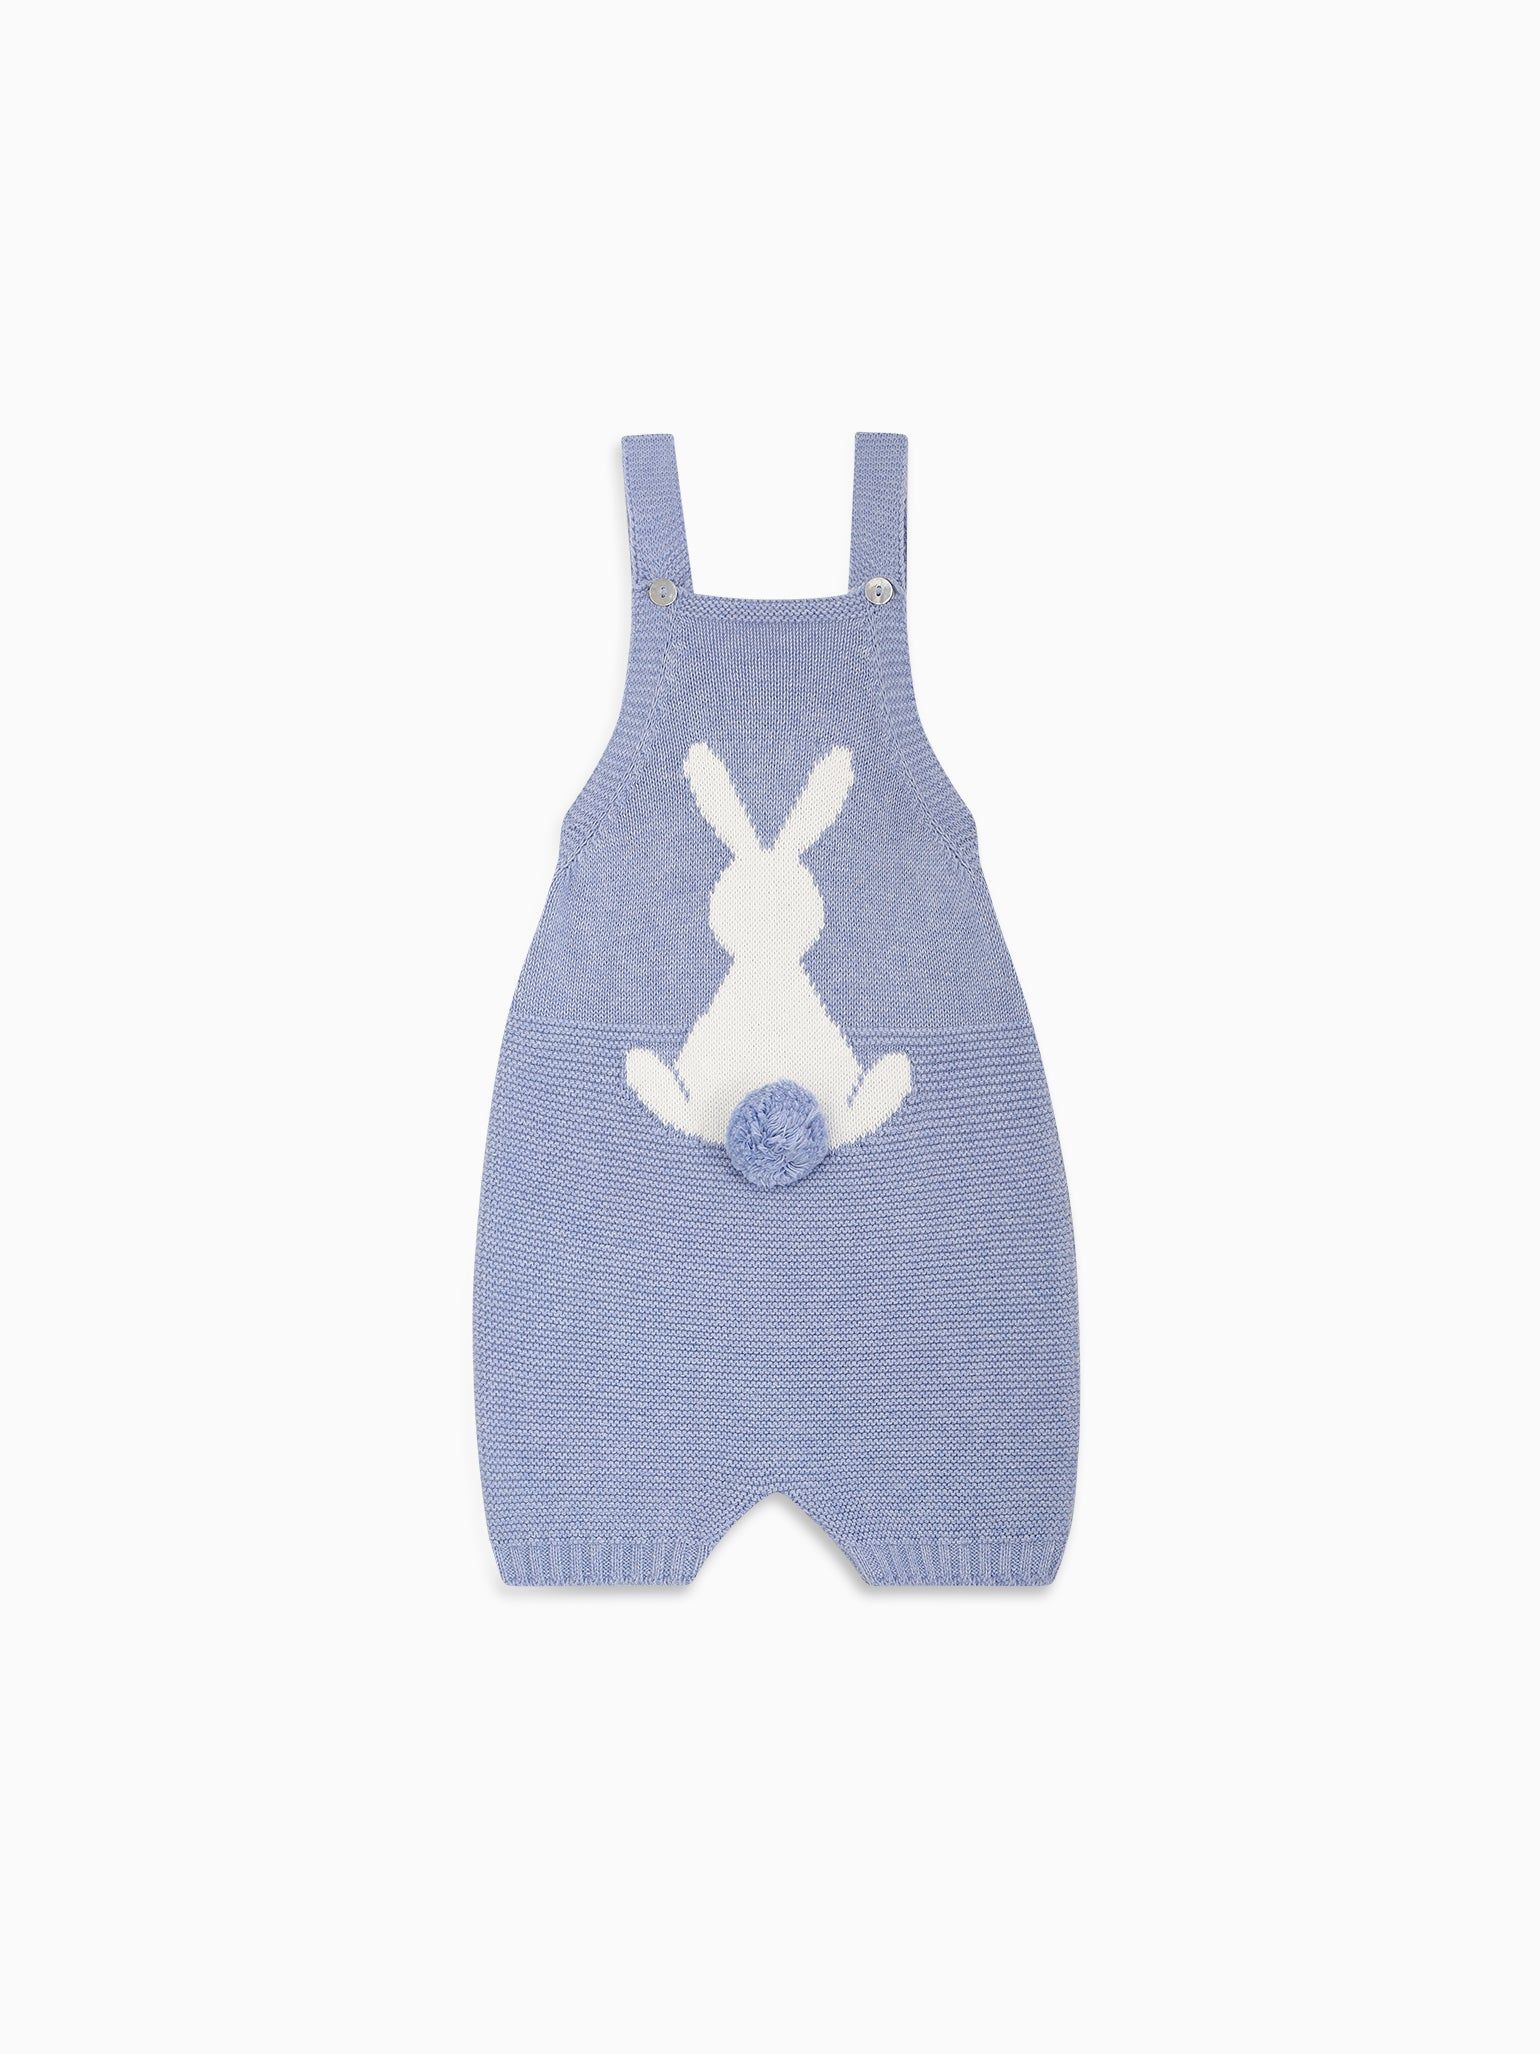 Blue Crispa Cotton Bunny Baby Knitted Overalls | La Coqueta (US)